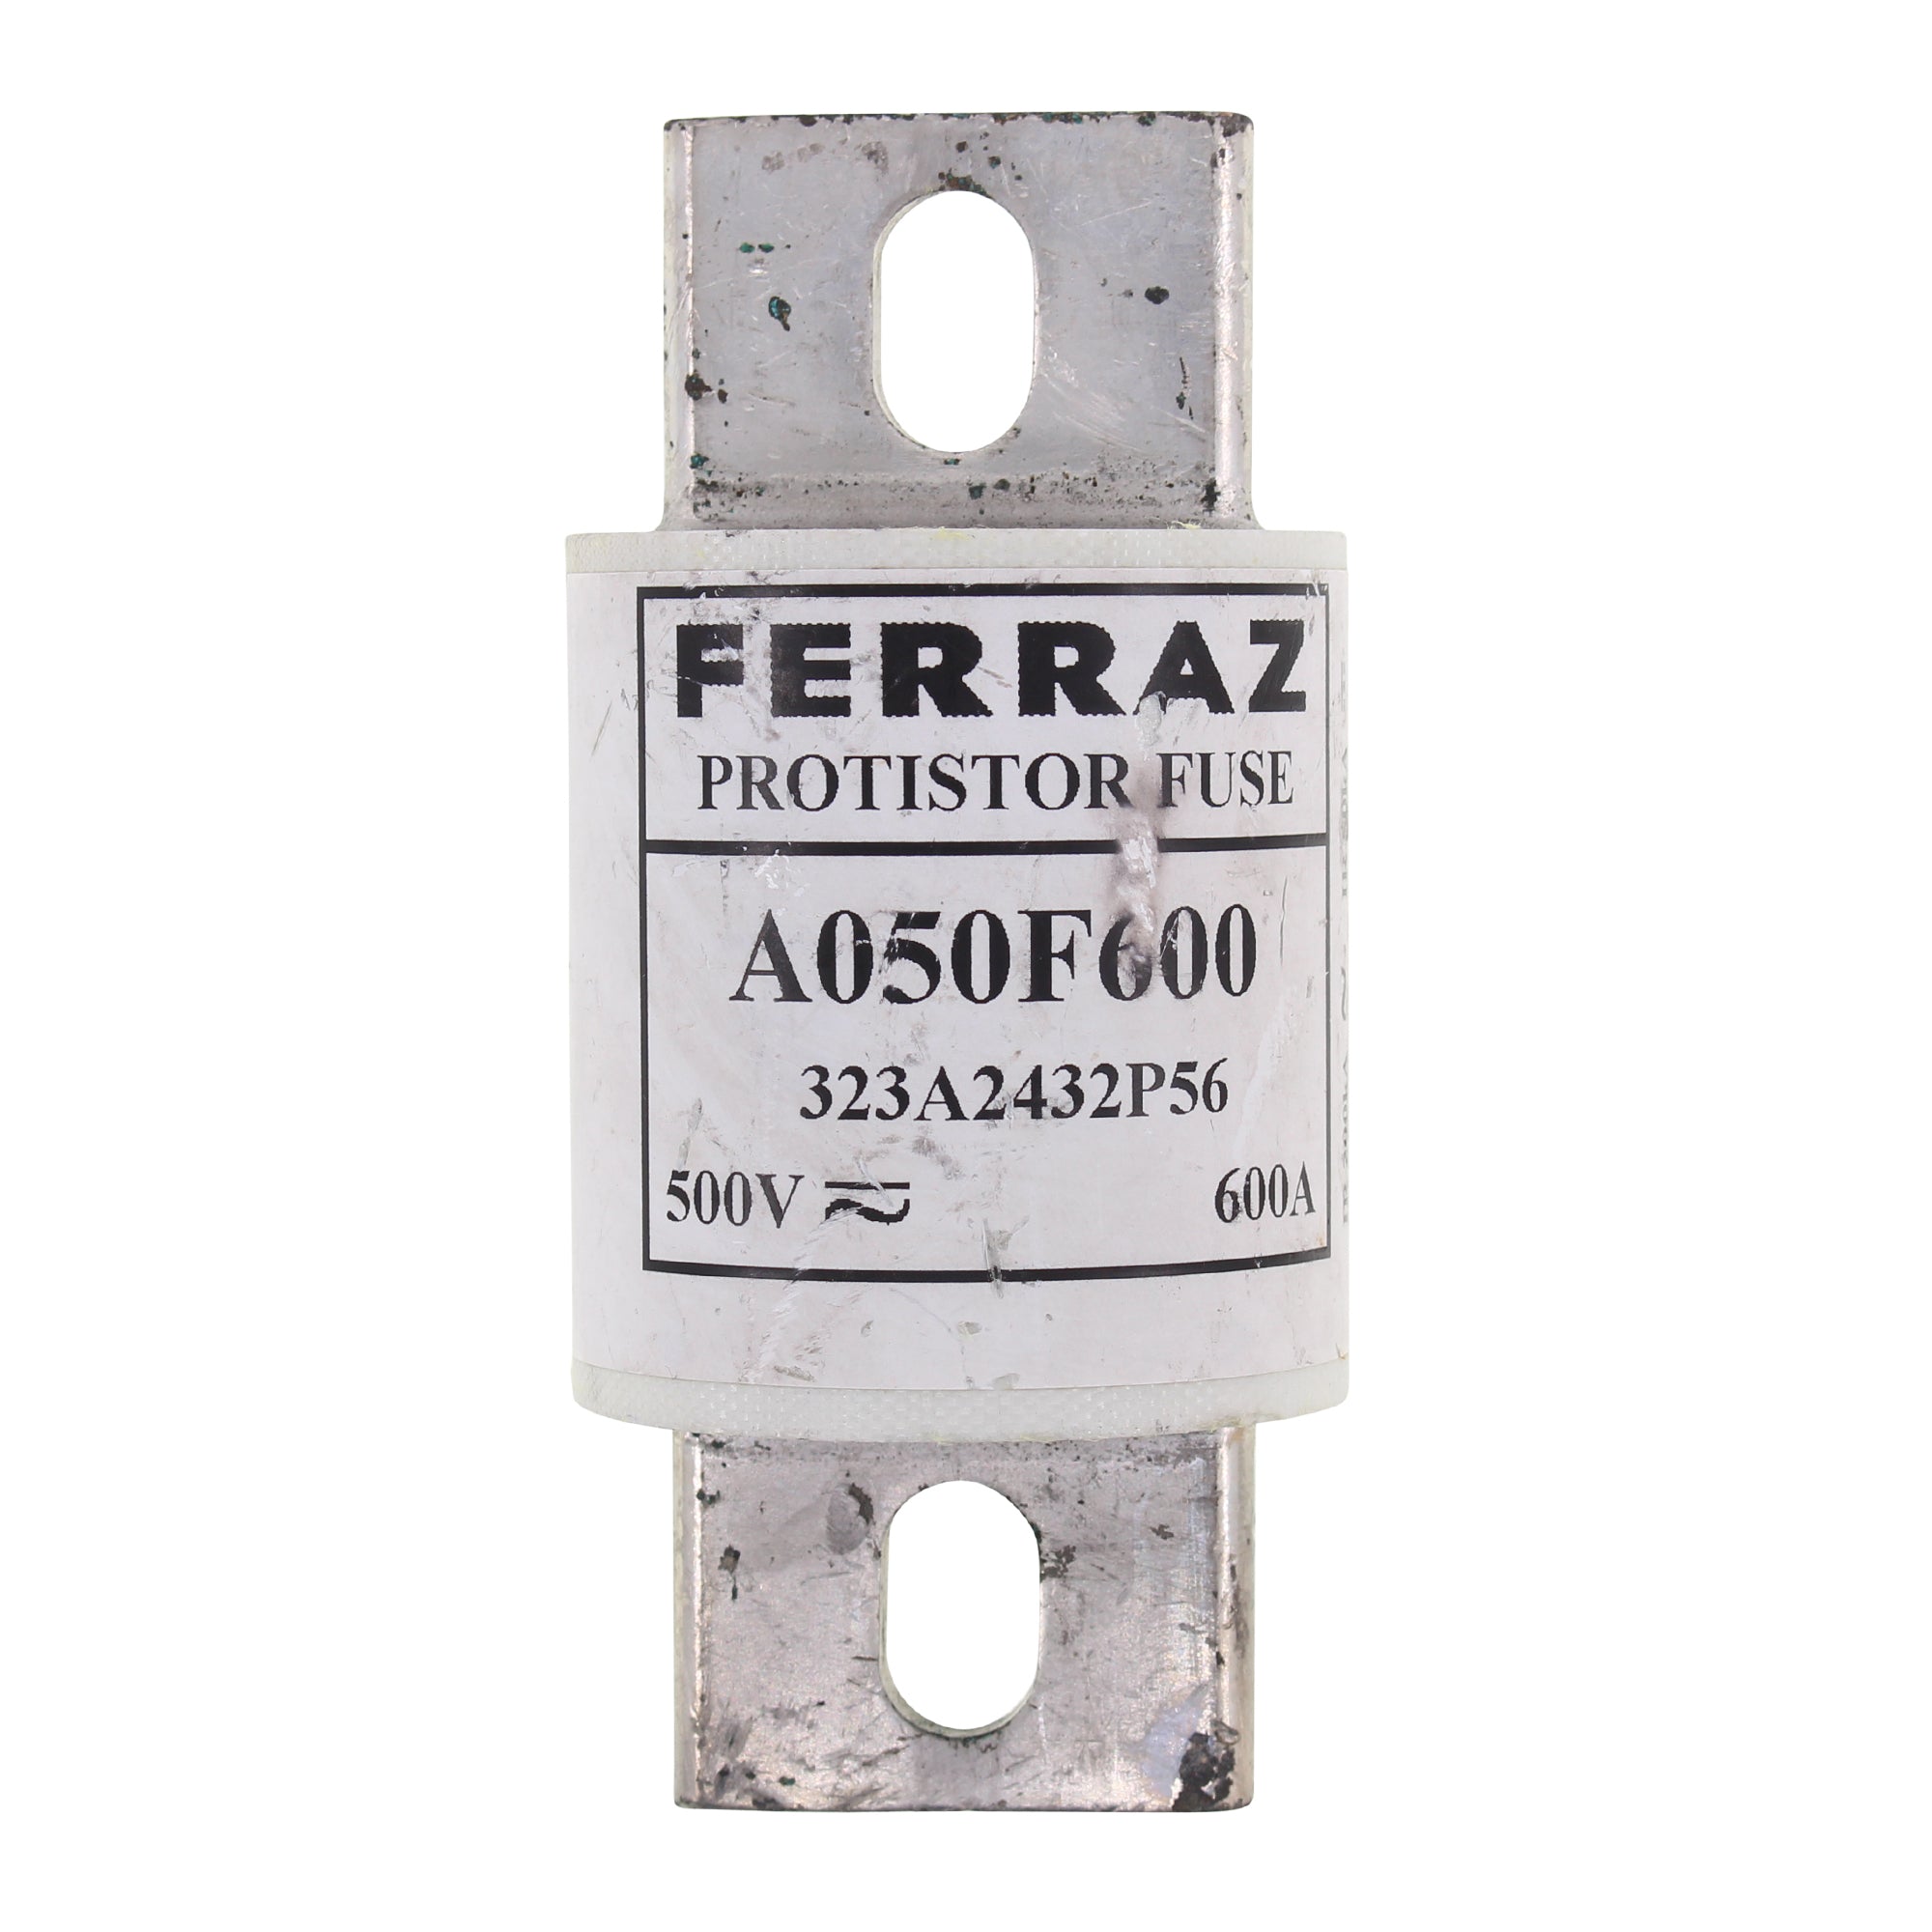 FERRAZ-SHAWMUT A050F600 SEMICONDUCTOR FUSE, FORM 101, 600-AMP, 500V –  Toomanyamps